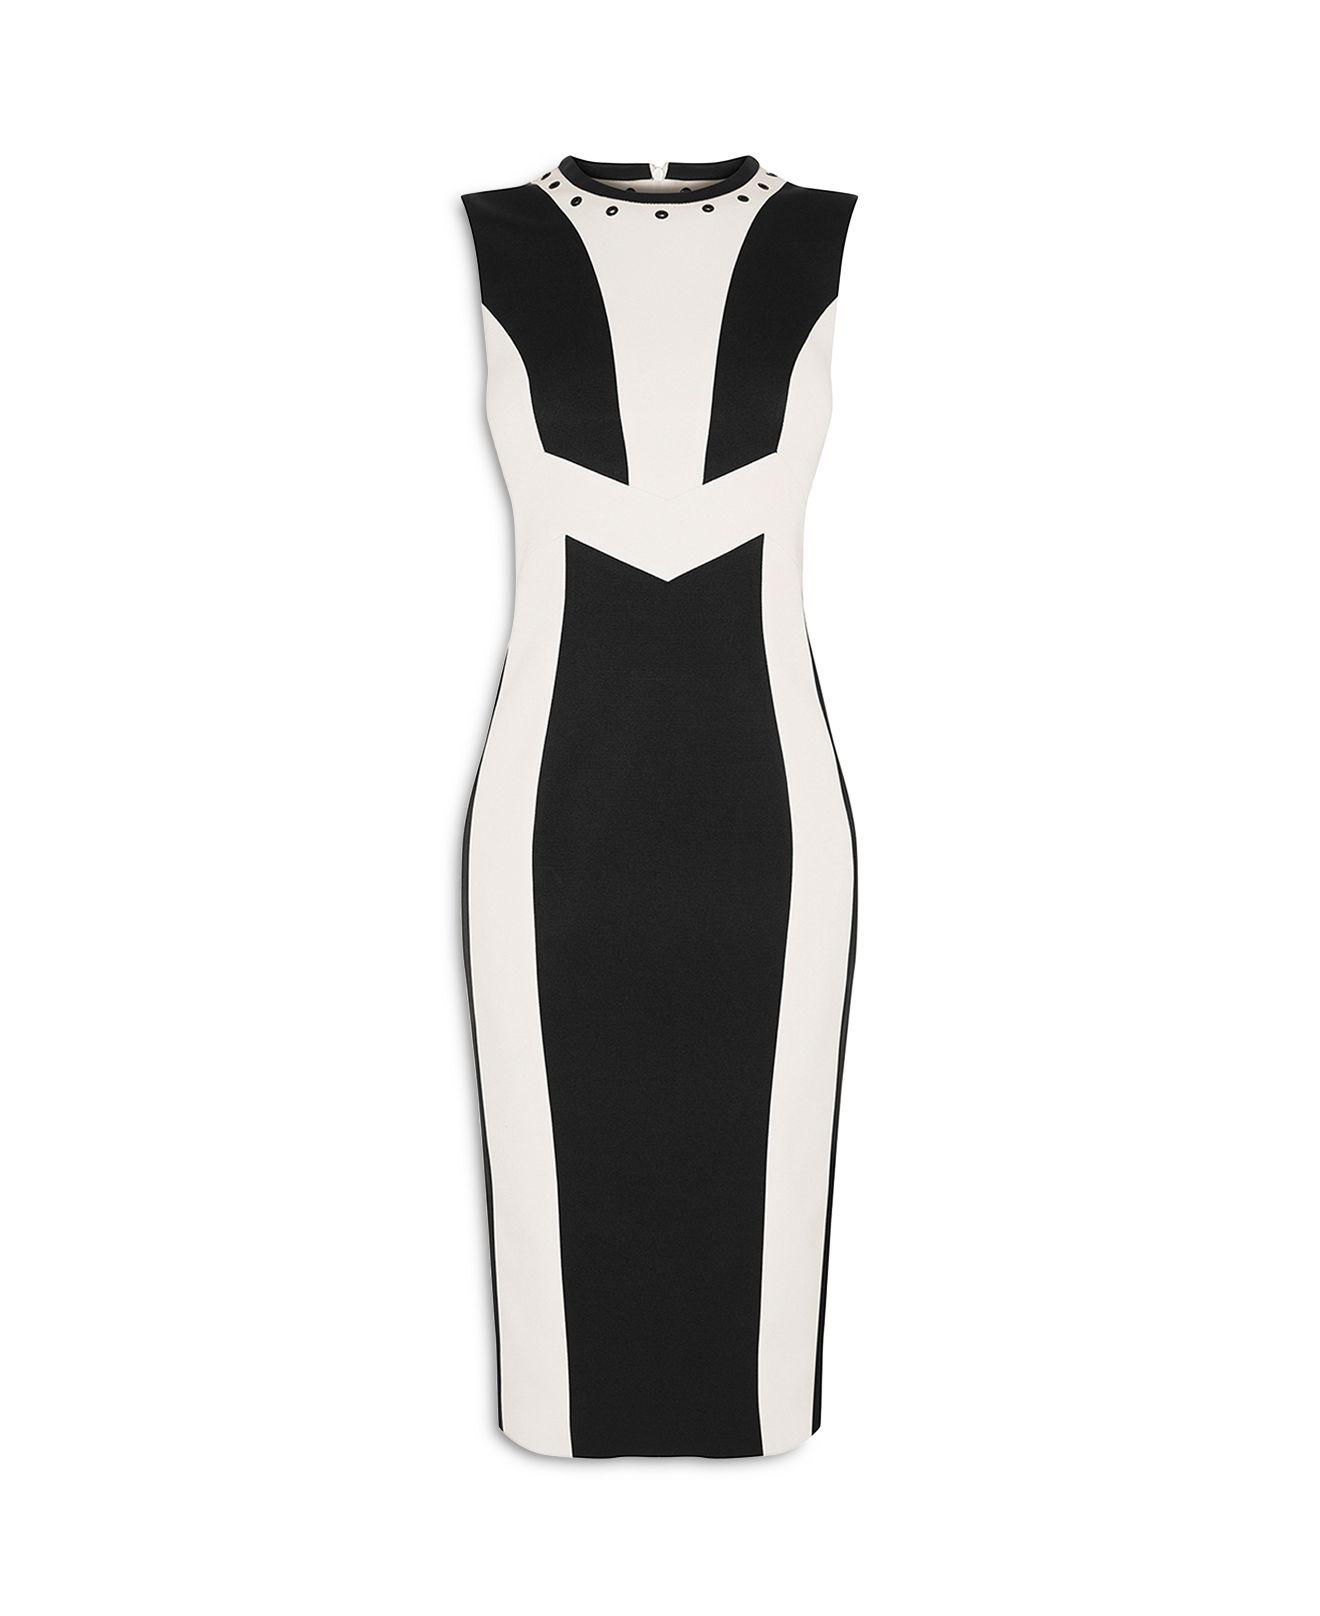 Karen Millen White Contrast Panel Dress - Black & White | Lyst